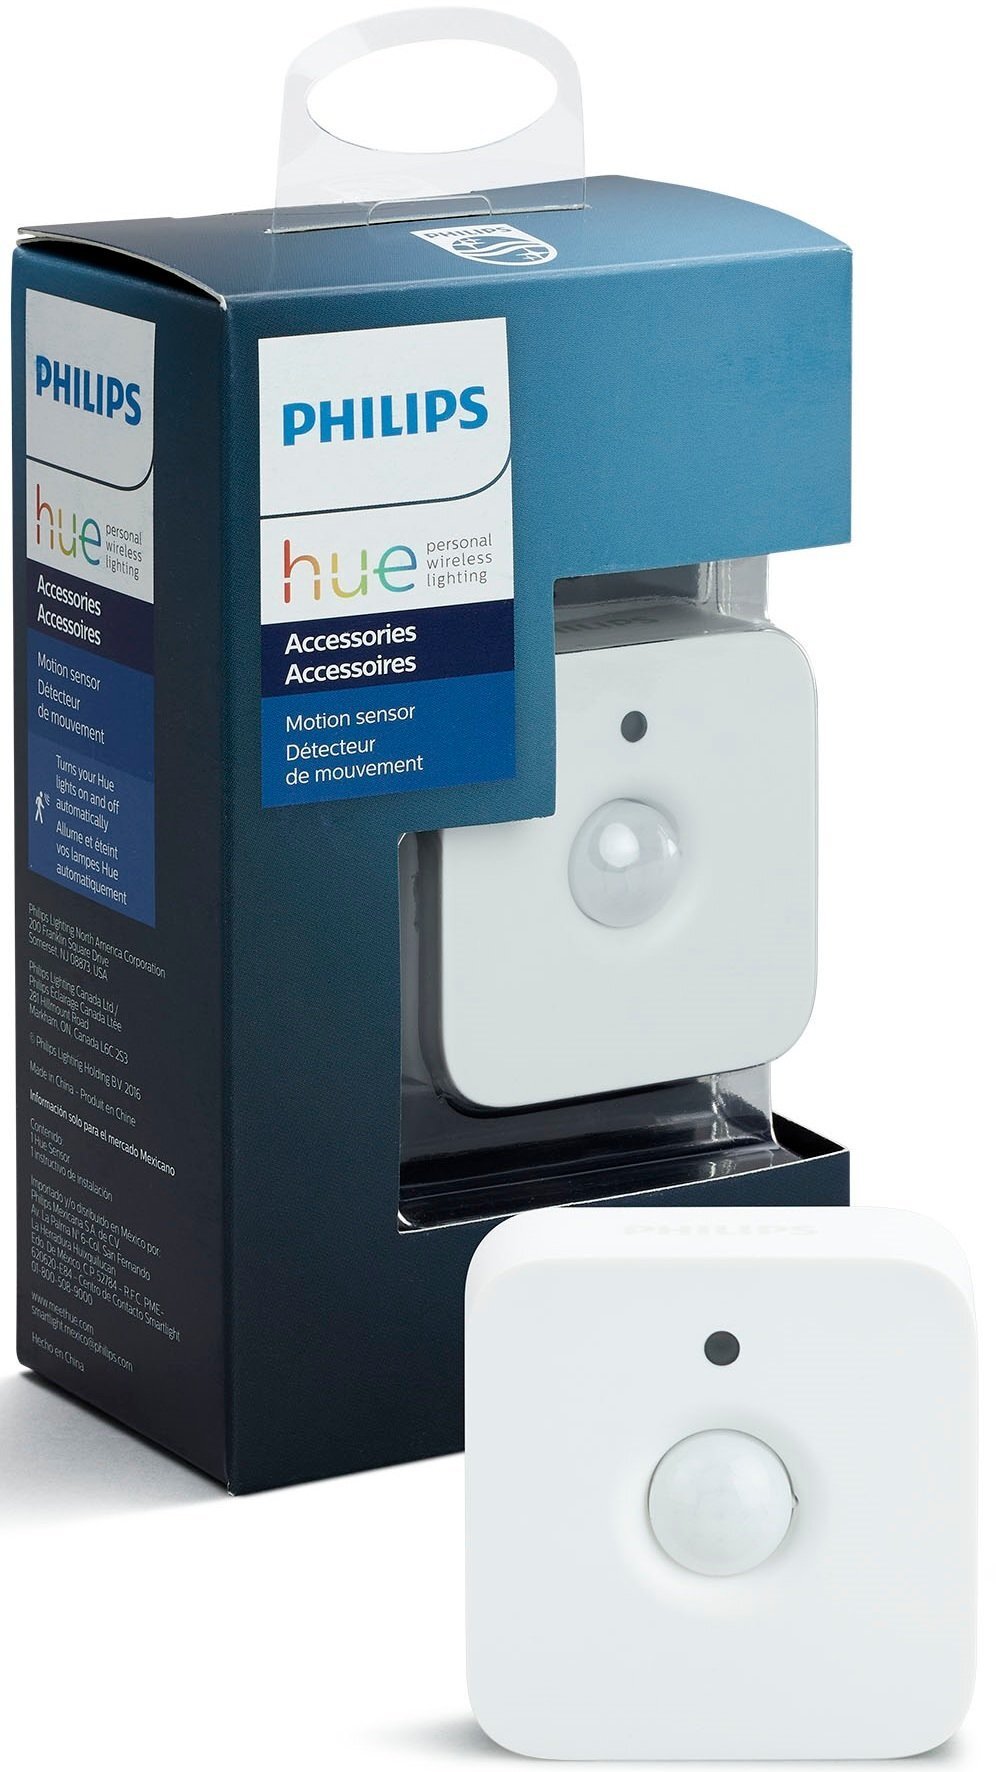 Филипс датчики. Встроенный интеллектуальный датчик Smart Light. Philips Hue Motion sensor. Датчик движения Philips Hue.